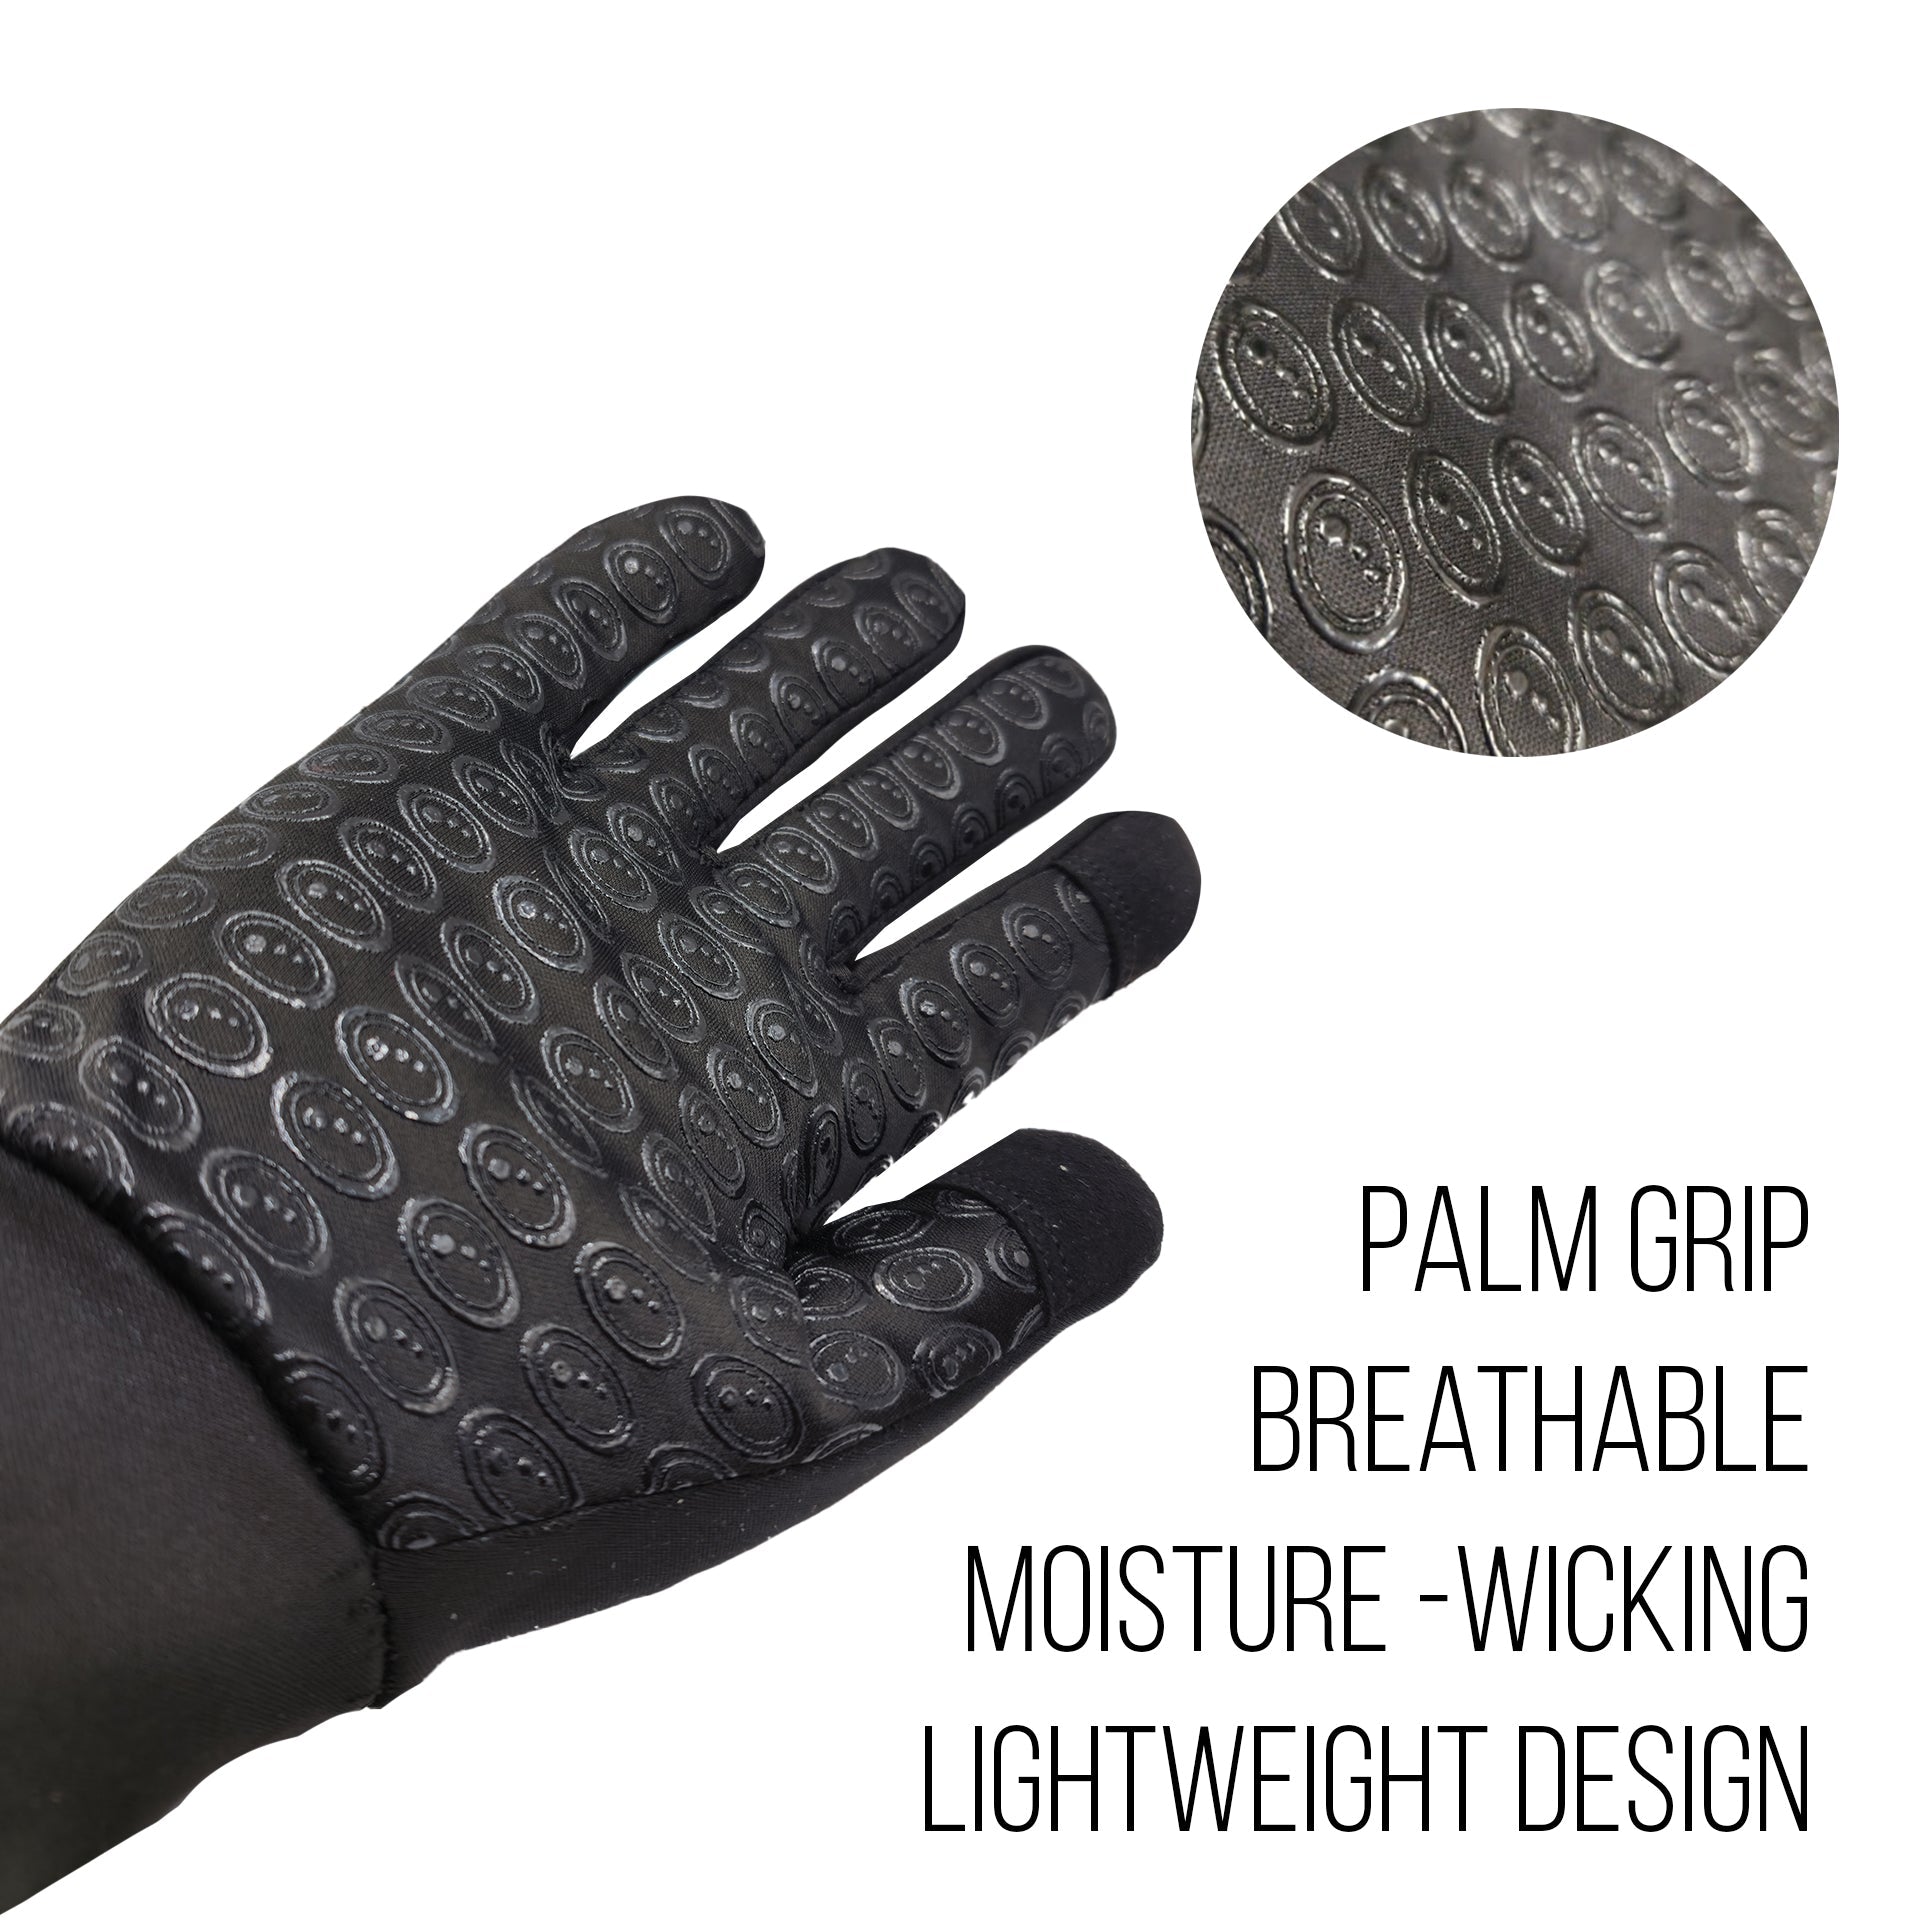 Optimum Aqua Waterproof Thermal Glove - Optimum